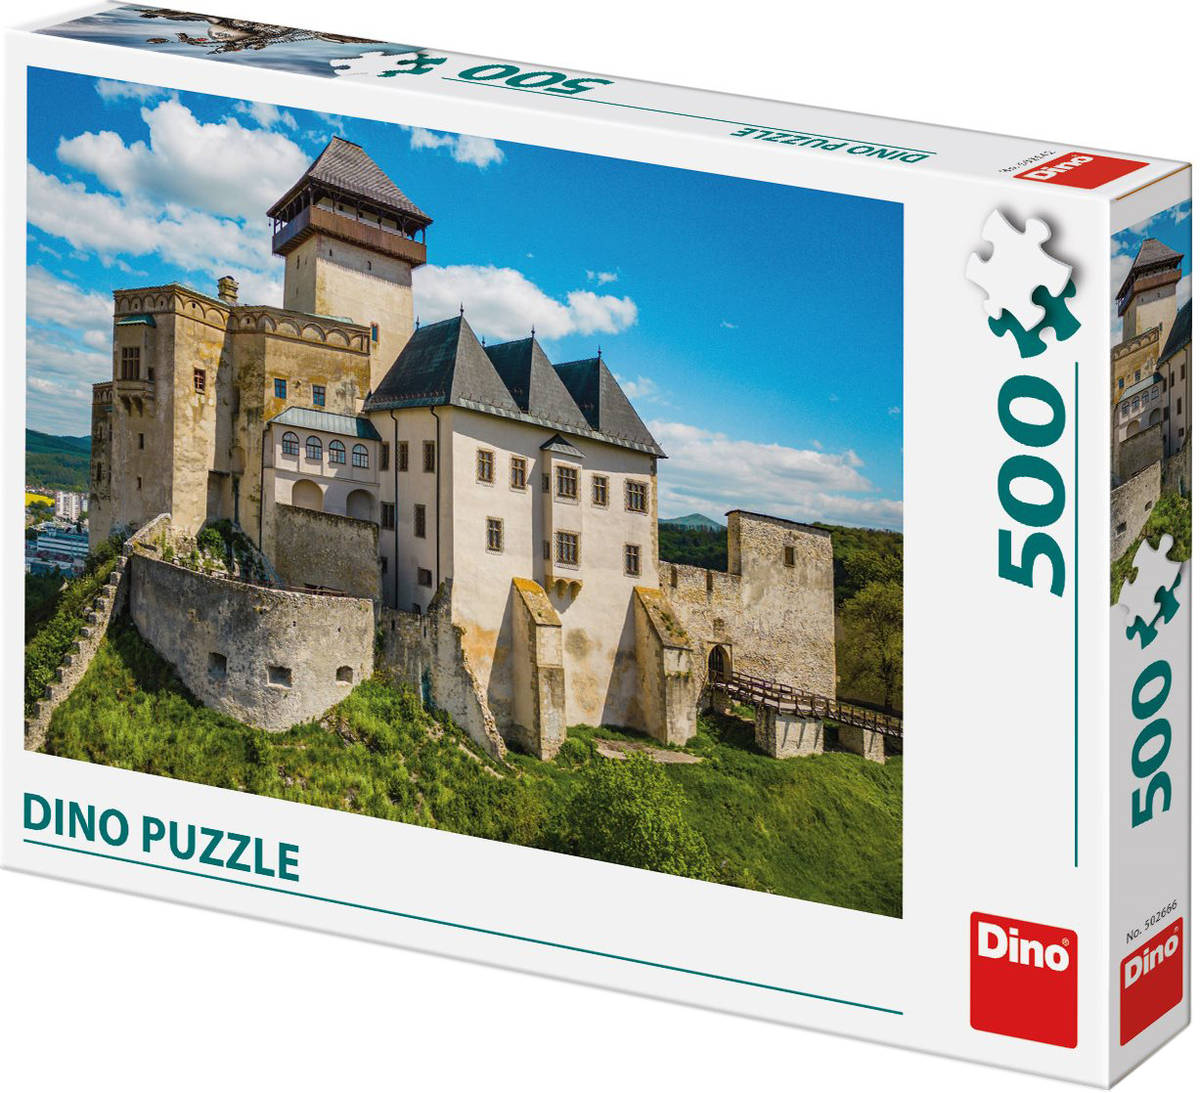 Fotografie DINO Puzzle Trenčínský hrad 47x33cm foto skládačka 500 dílků v krabici